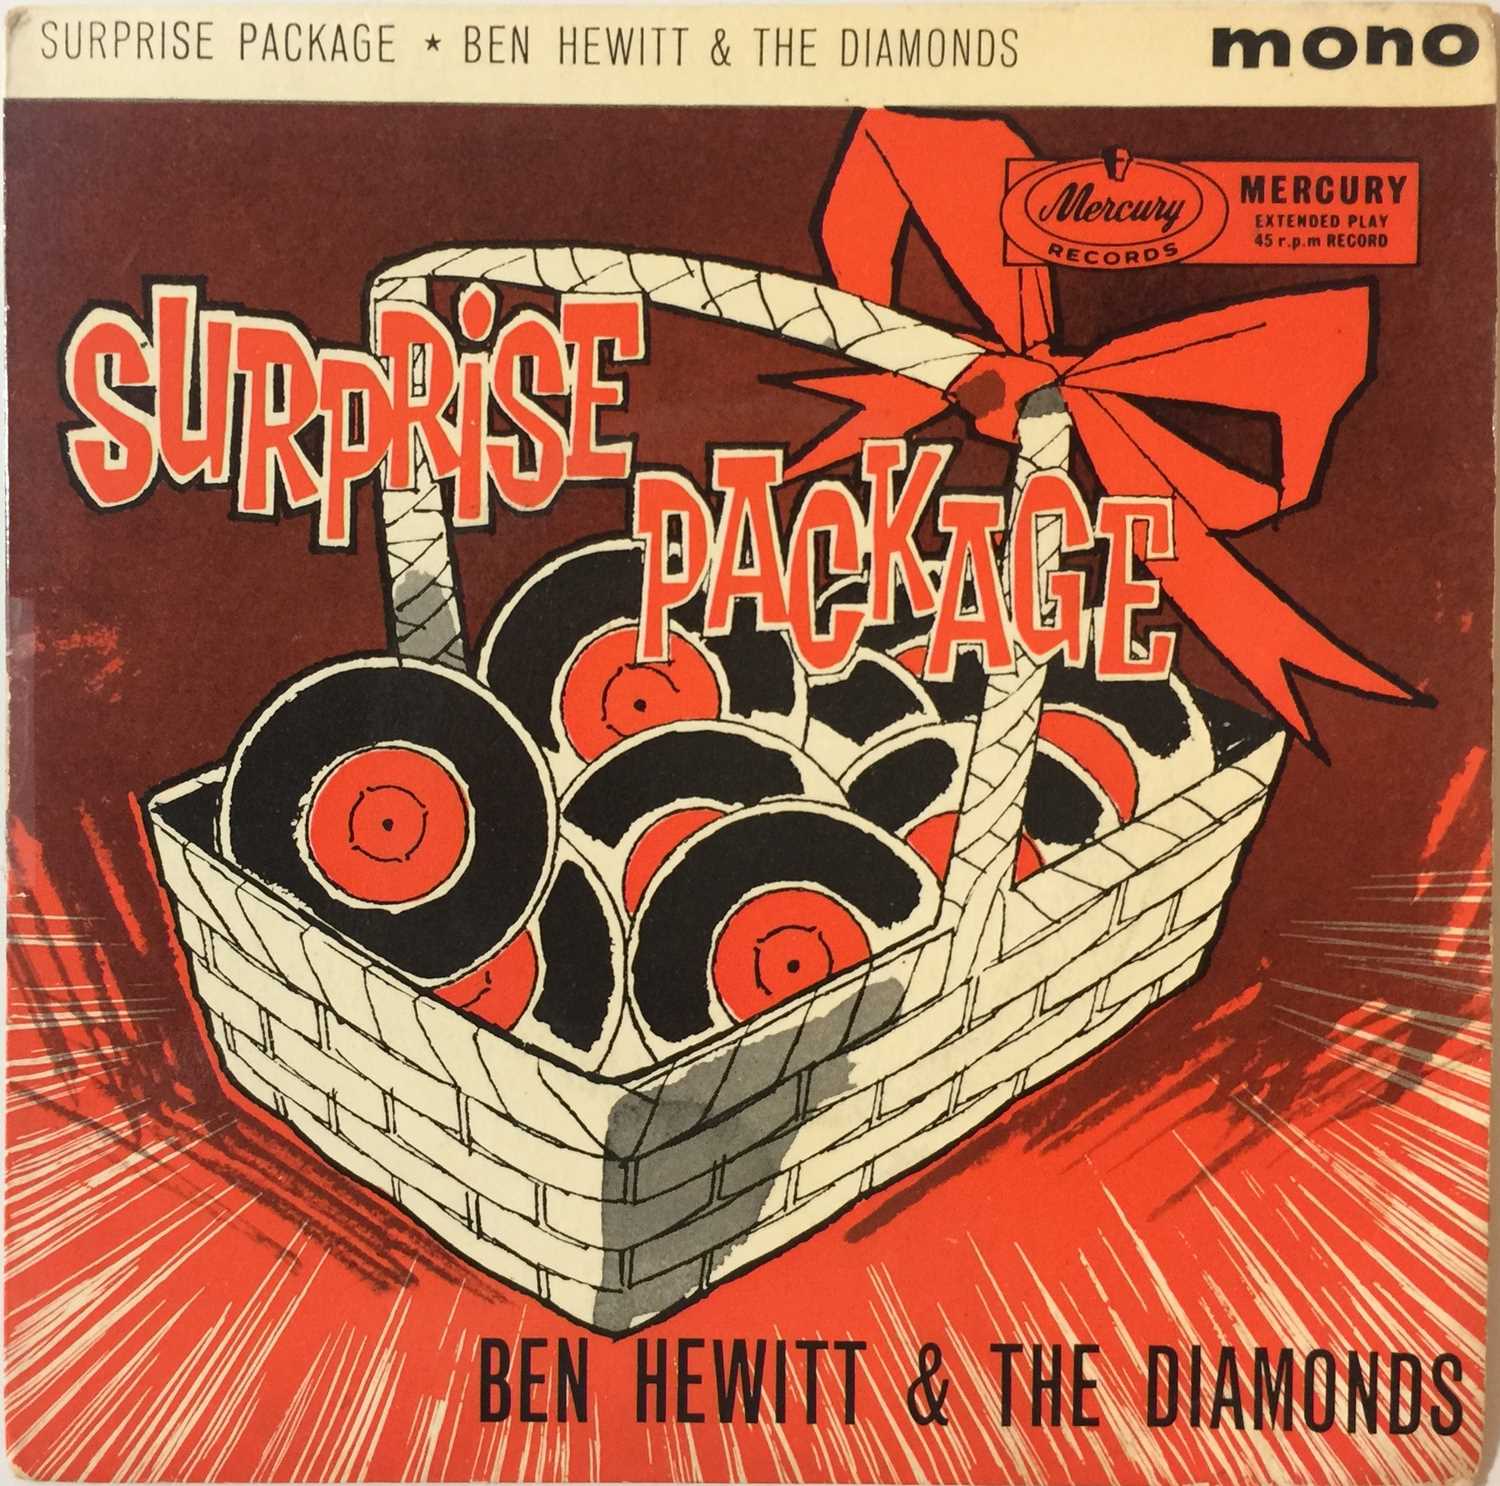 Lot 37 - Ben Hewitt & The Diamonds - Surprise Package 7" EP (ZEP 10088)